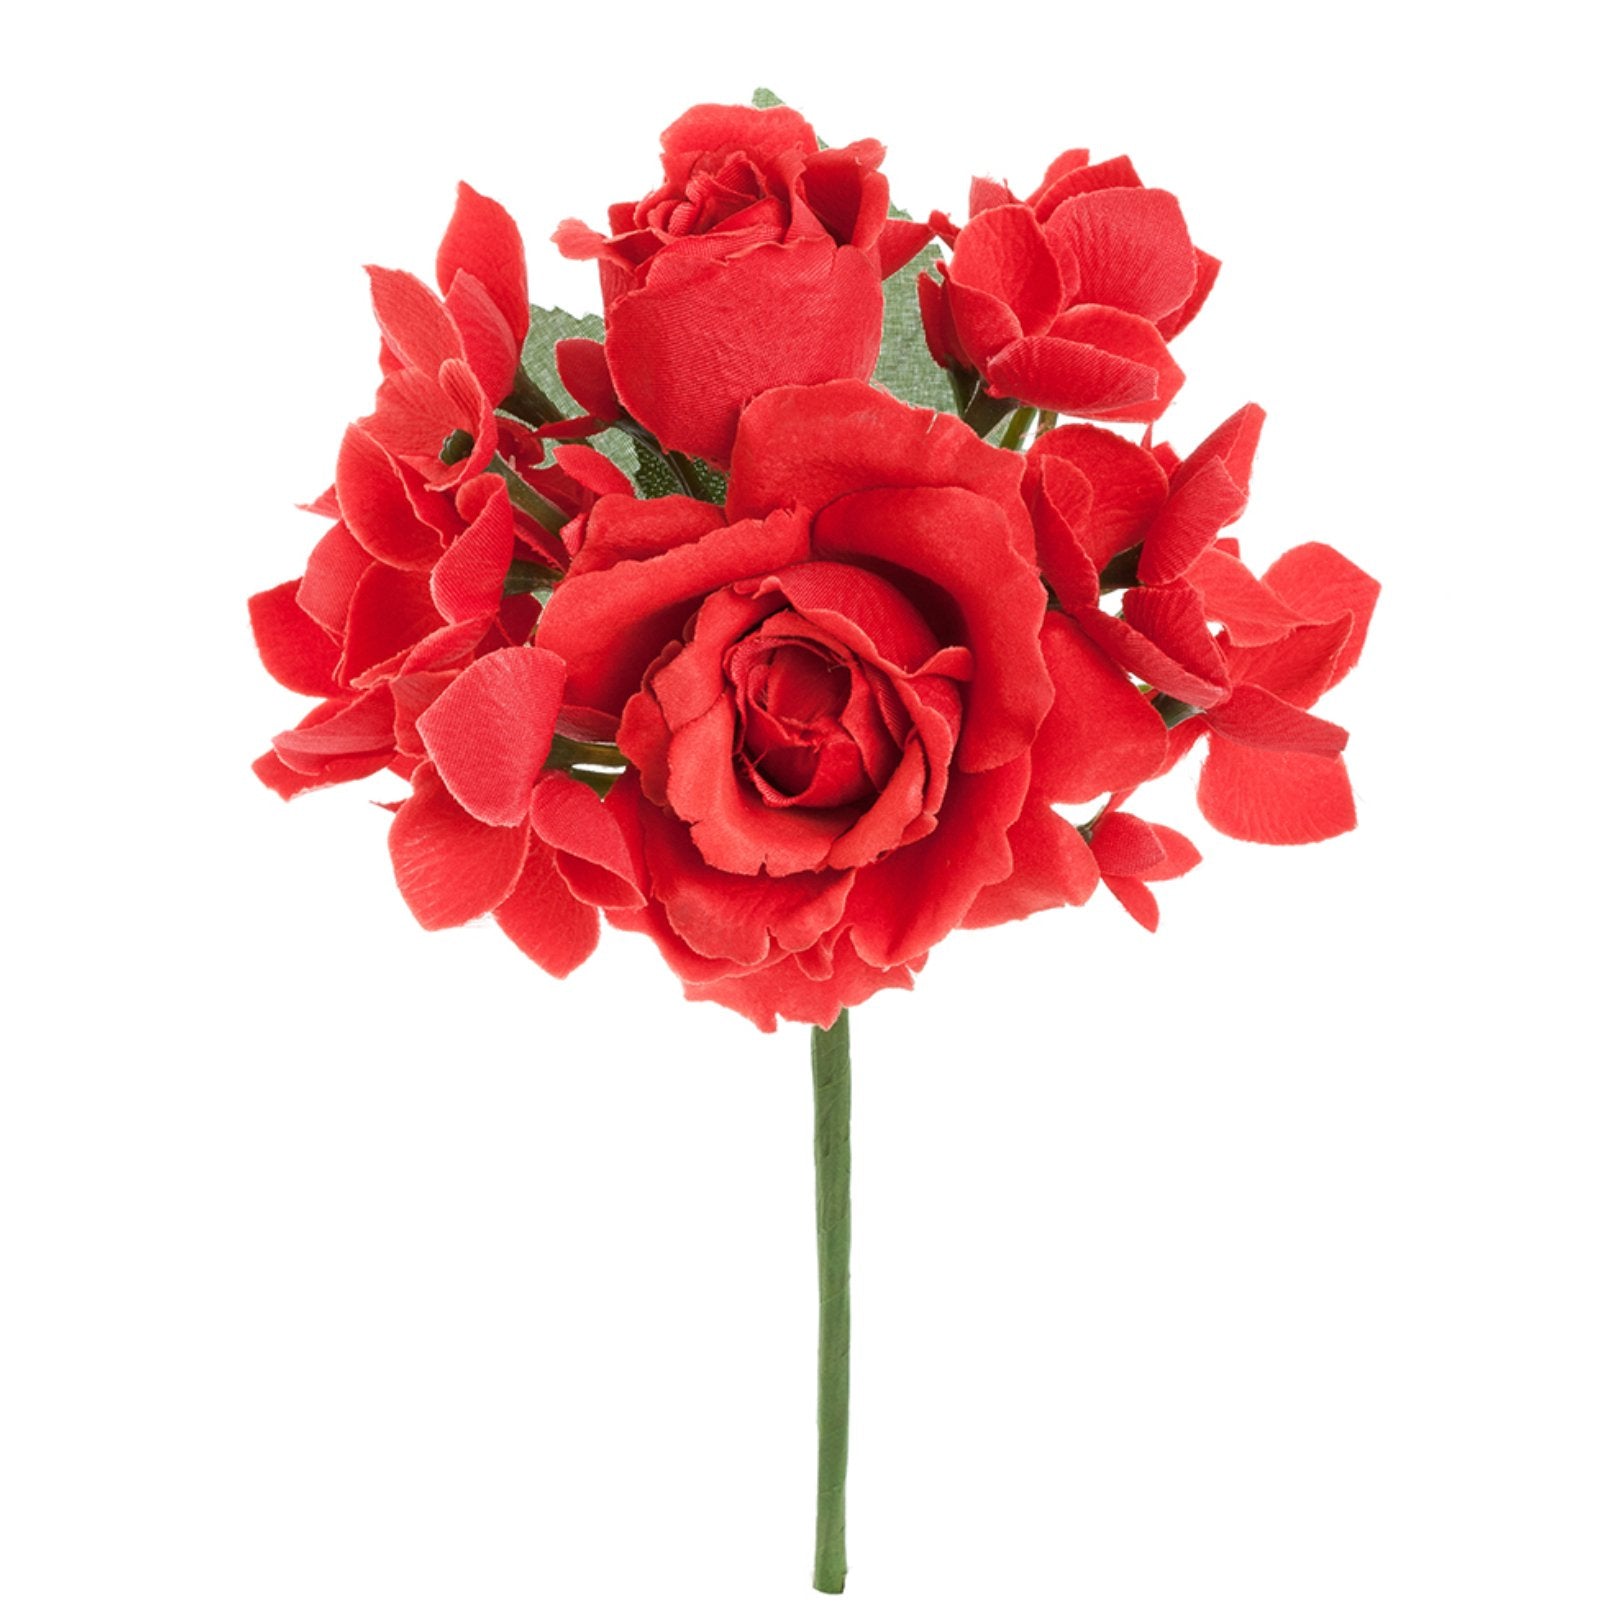 Flor flamenca bouquet - Pure Flamenco